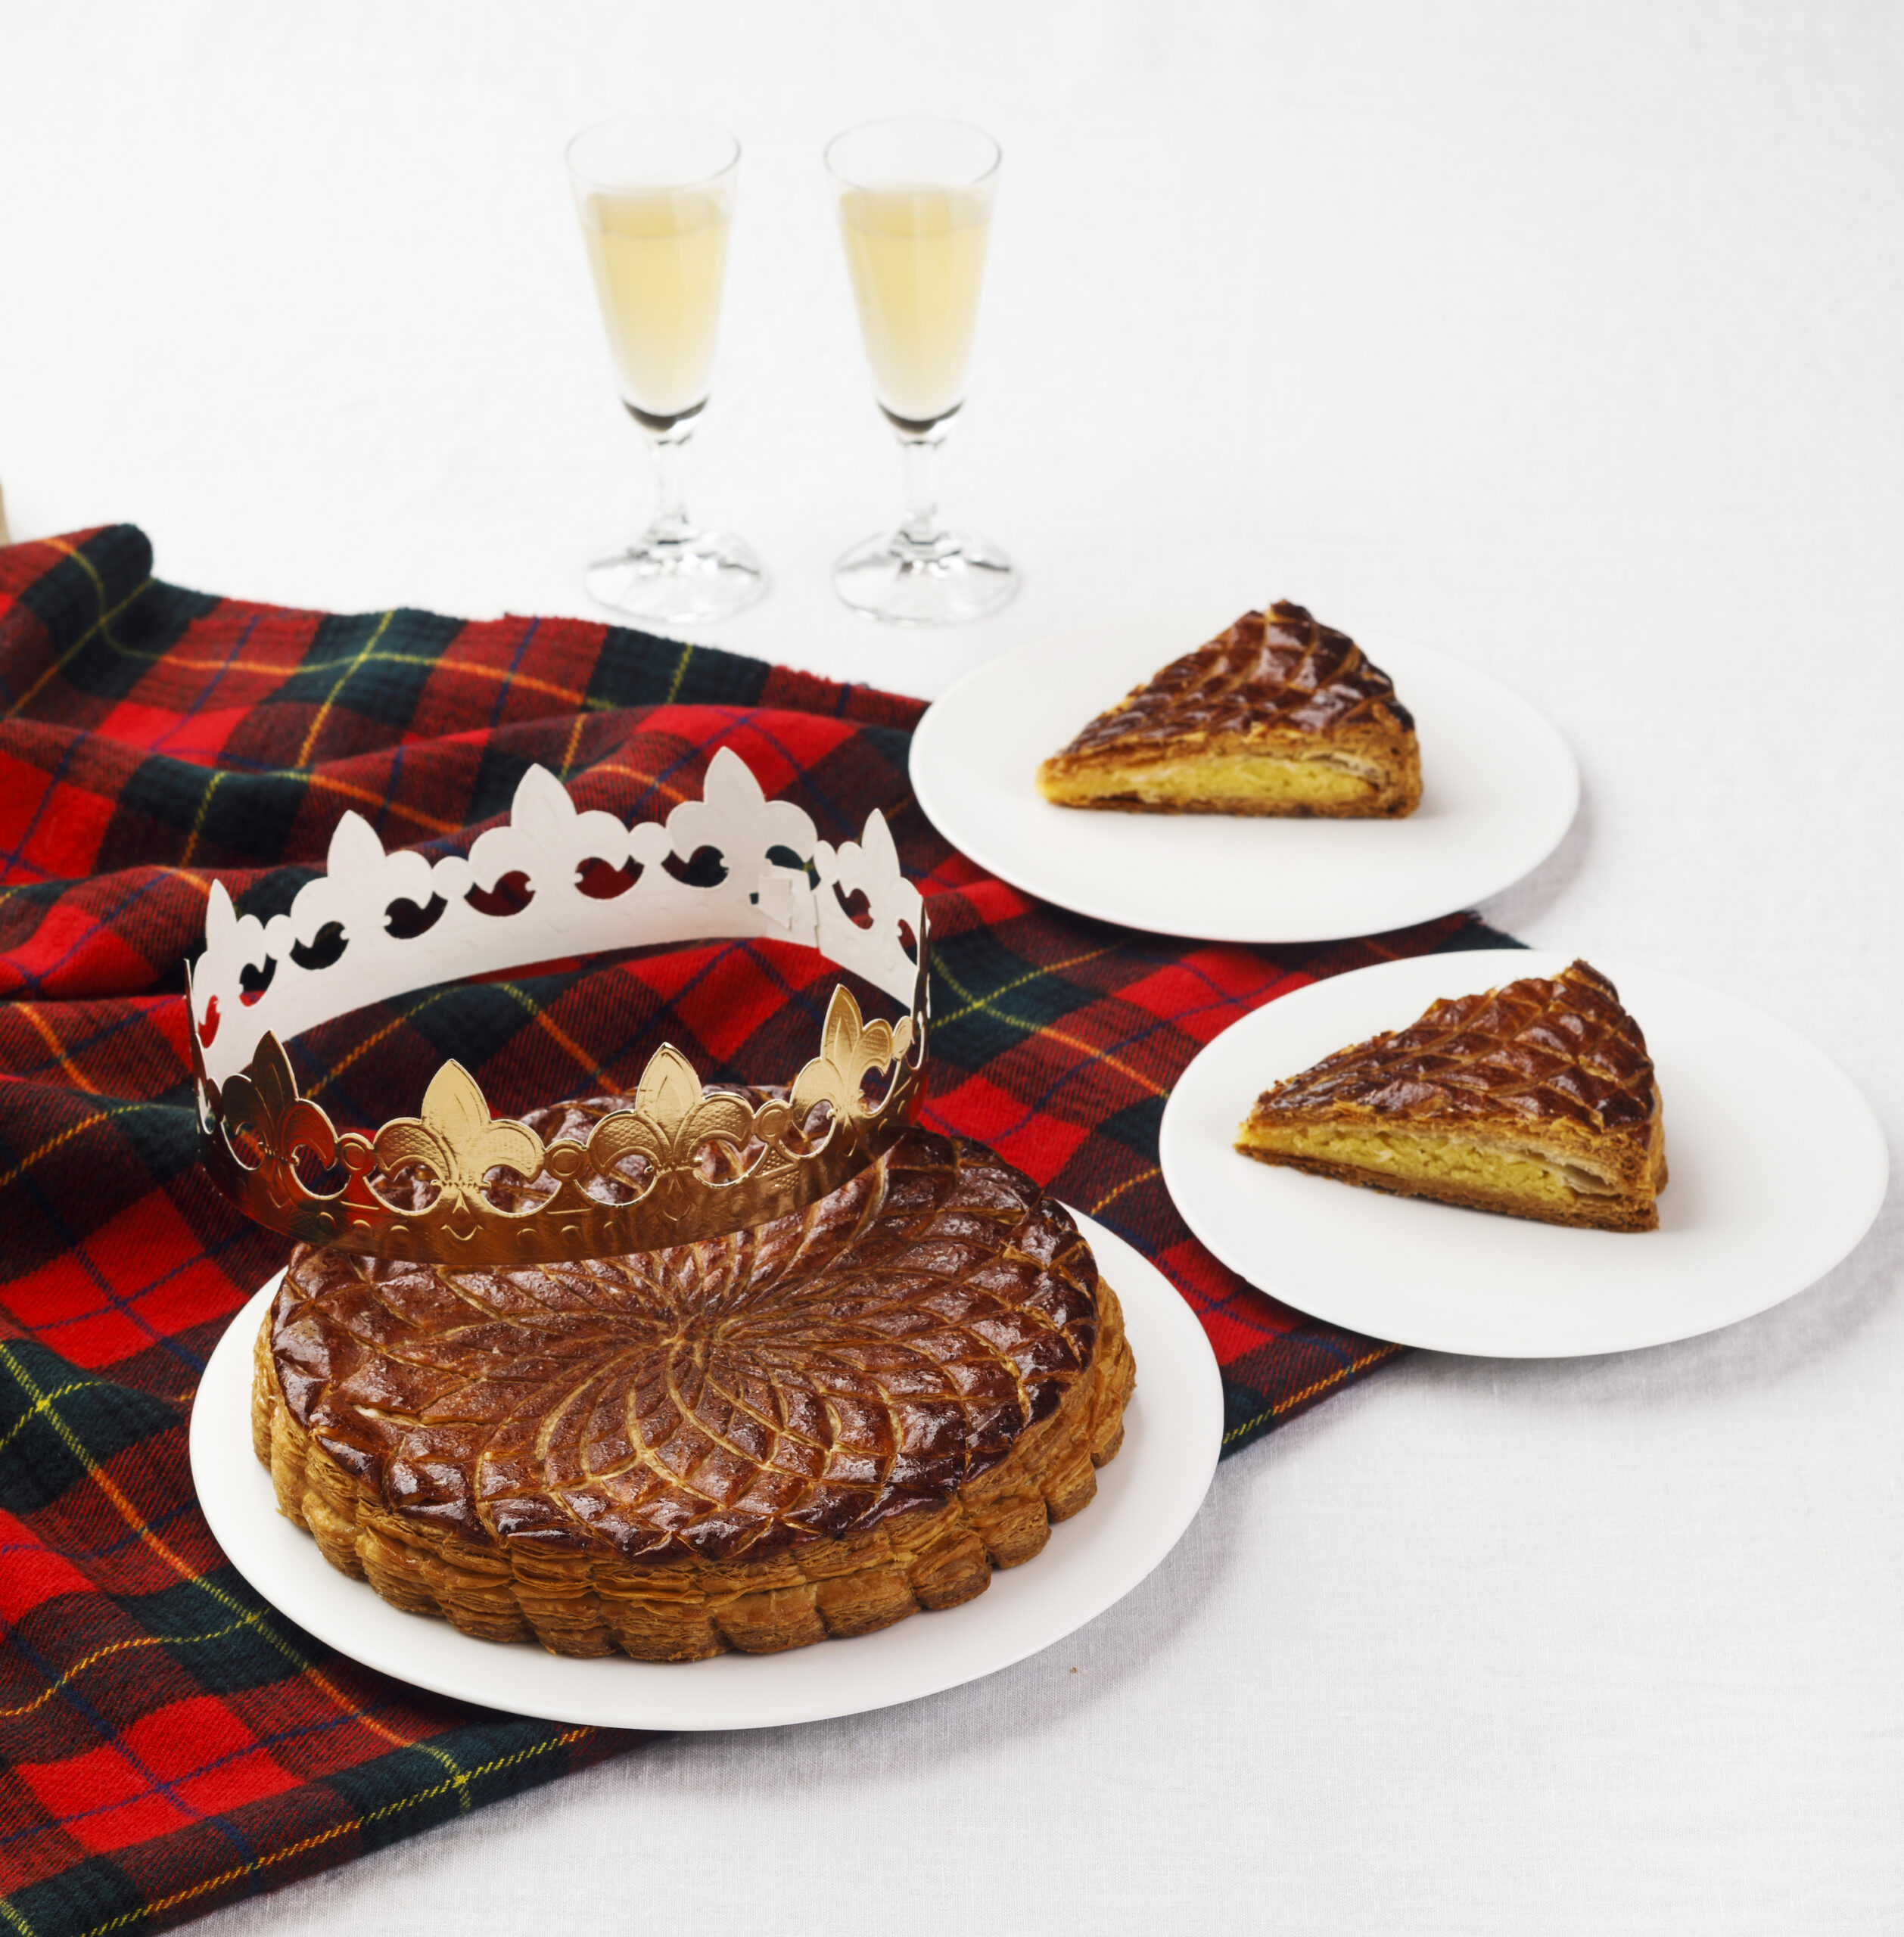 新しい年を祝うフランス伝統菓子「ガレット デ ロワ」予約販売開始 